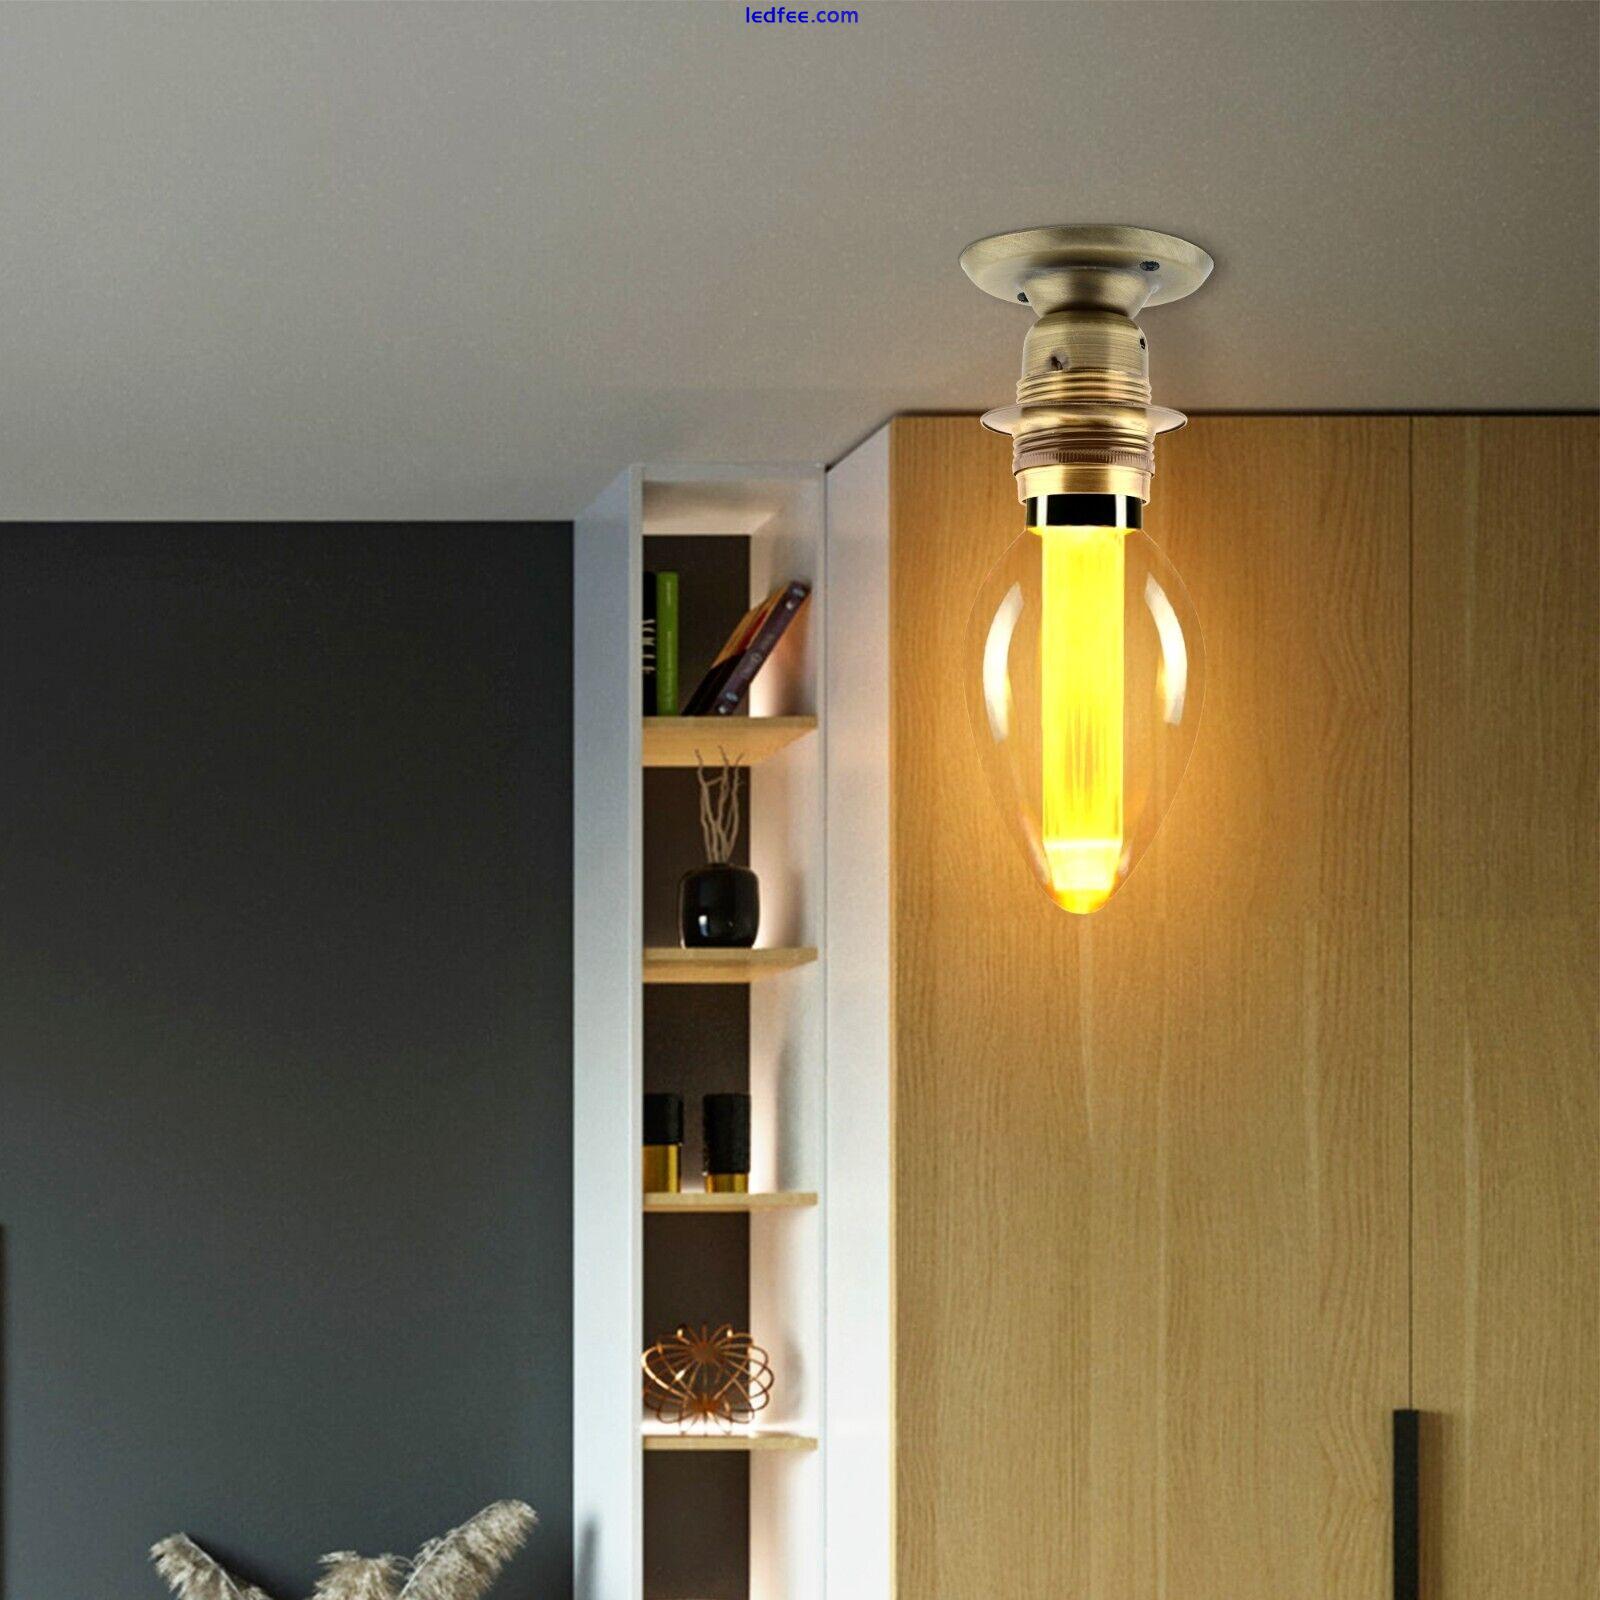 LED Decorative Vintage Bulb Edison LED Filament Light Bulbs Amber Glass E27 3W 3 